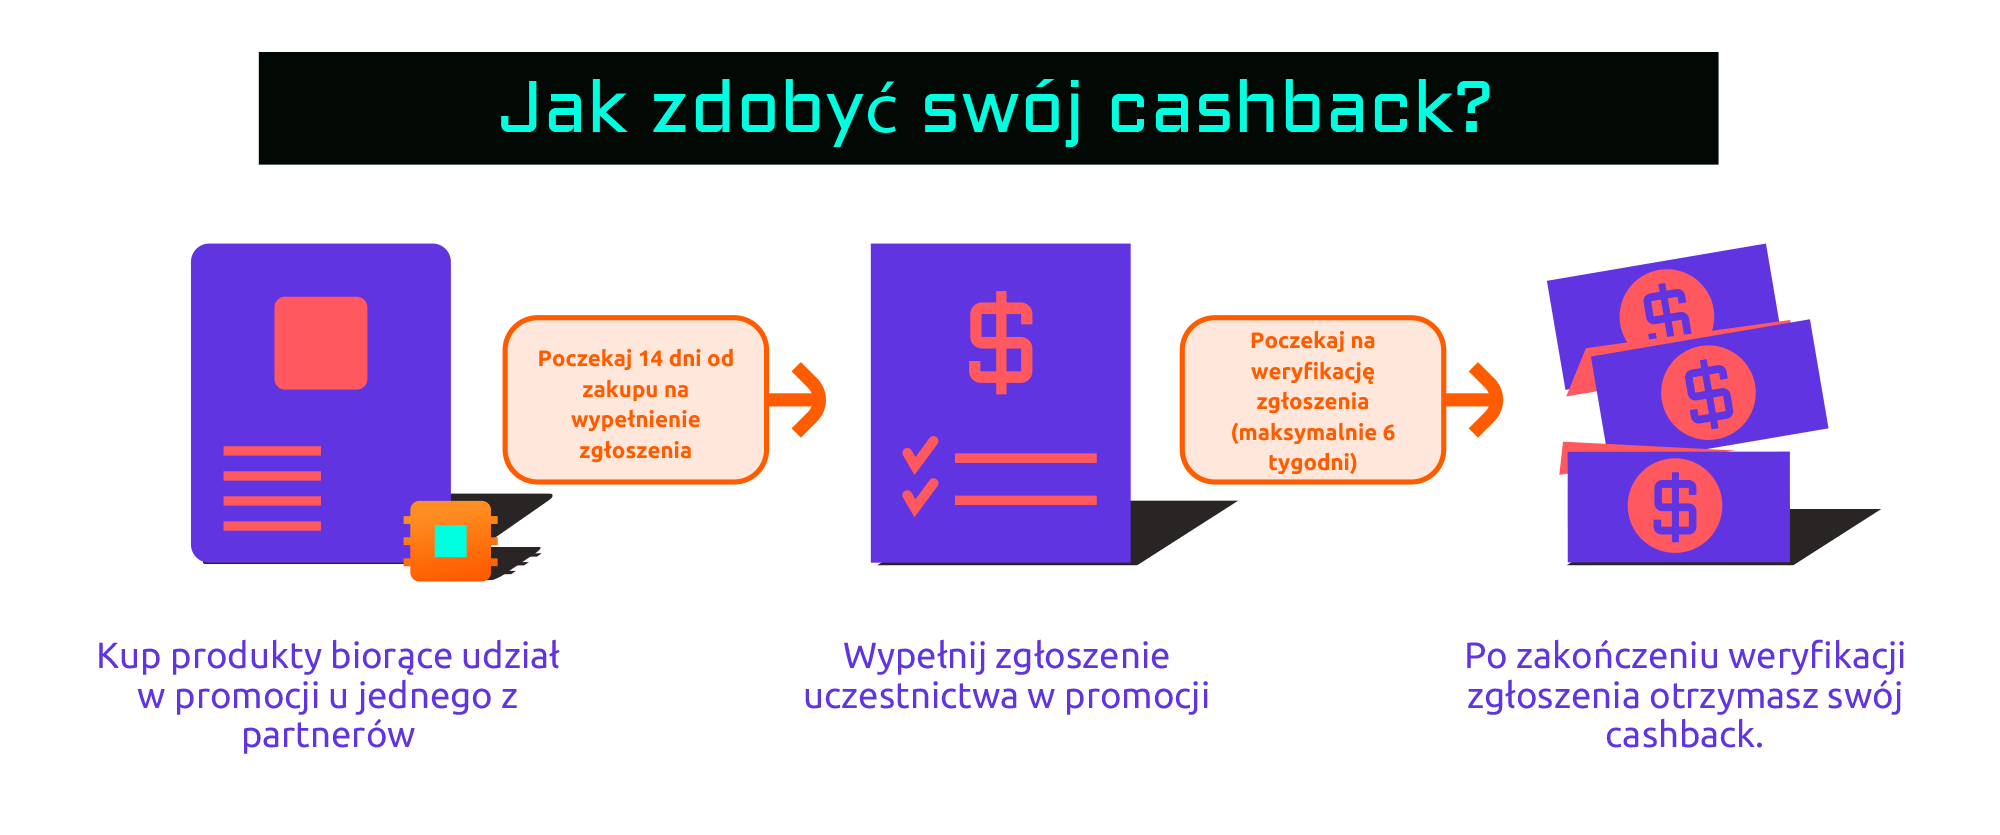 Jak zdobyć swój cashback?